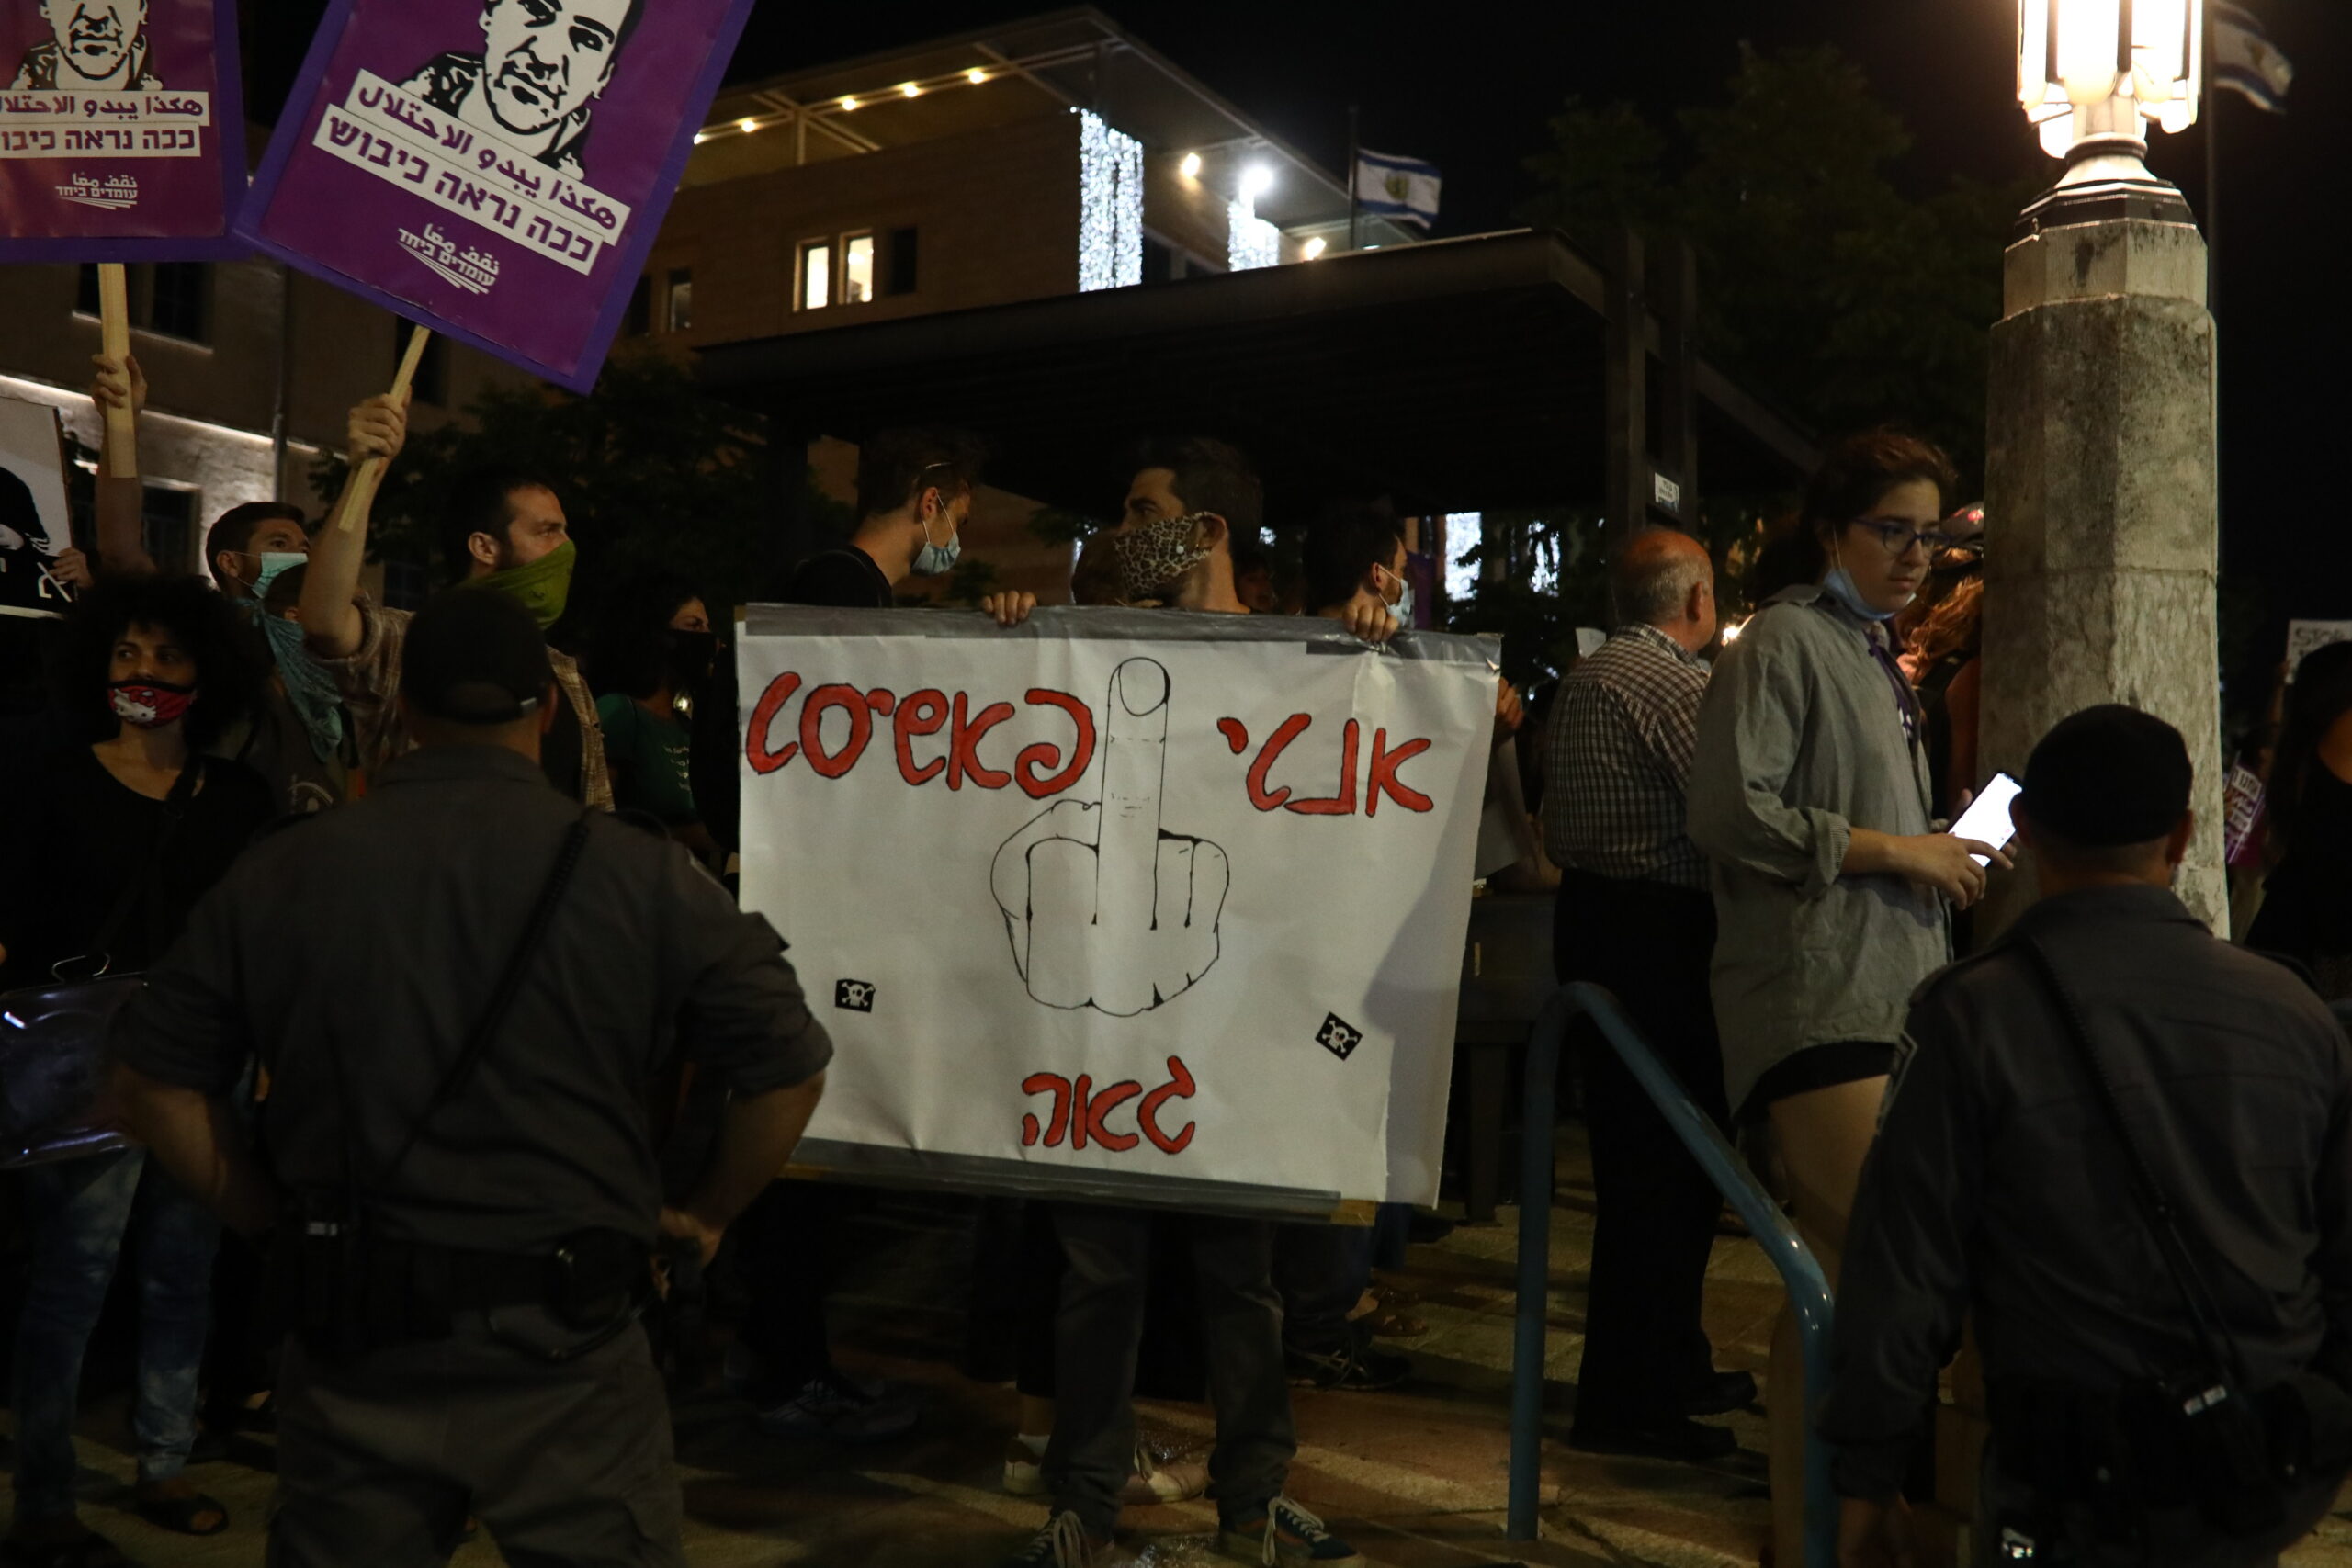 מפגינים בכיכר ספרא בירושלים במחאה על רצח איאד אלחלאק (אורן זיו)